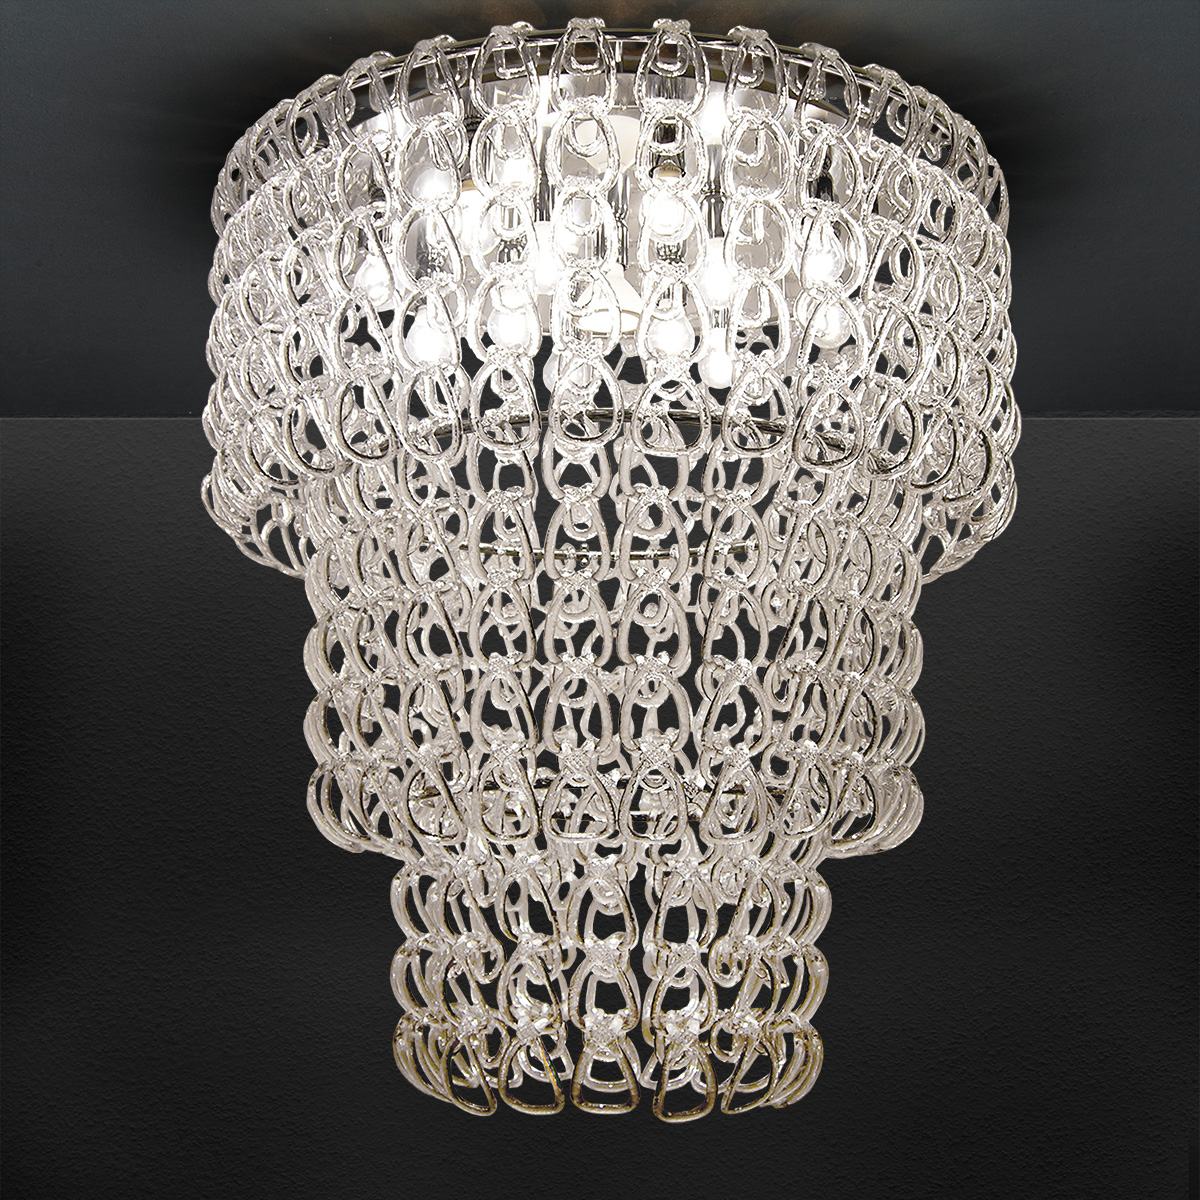 Φωτιστικό οροφής με κρύσταλλα Μουράνο ΓΑΝΤΖΟΙ ceiling lamp with Murano crystals